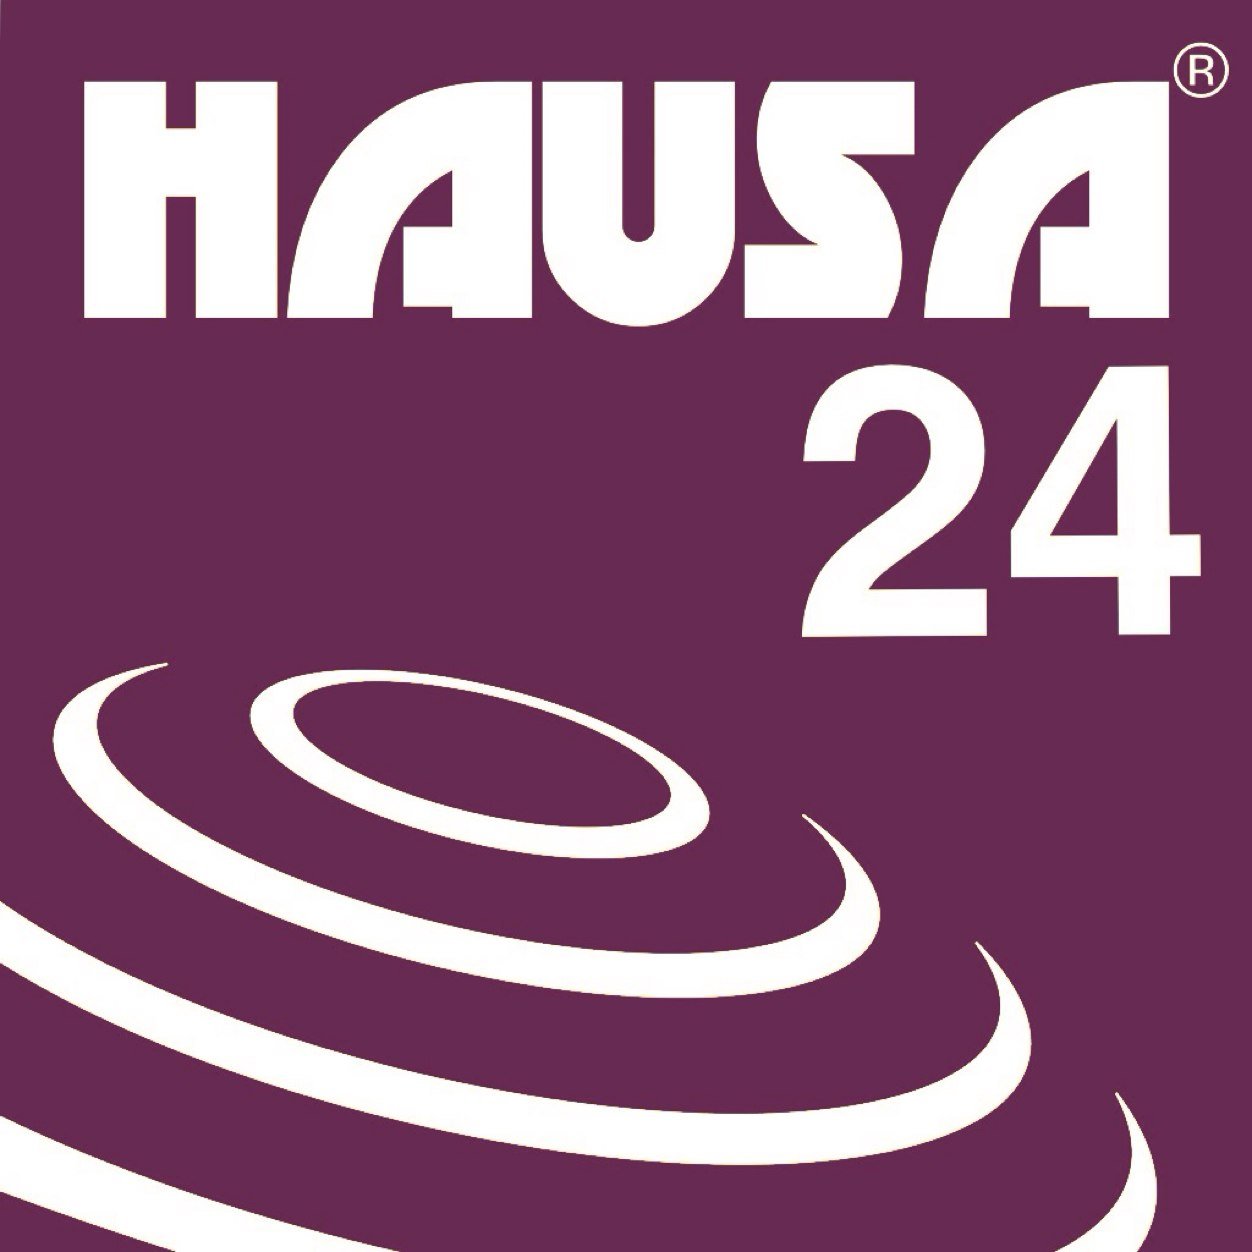 #HAUSA24 kafar yada labarai ce da take yada labaran ta cikin harshen Hausa, a kodayaushe.